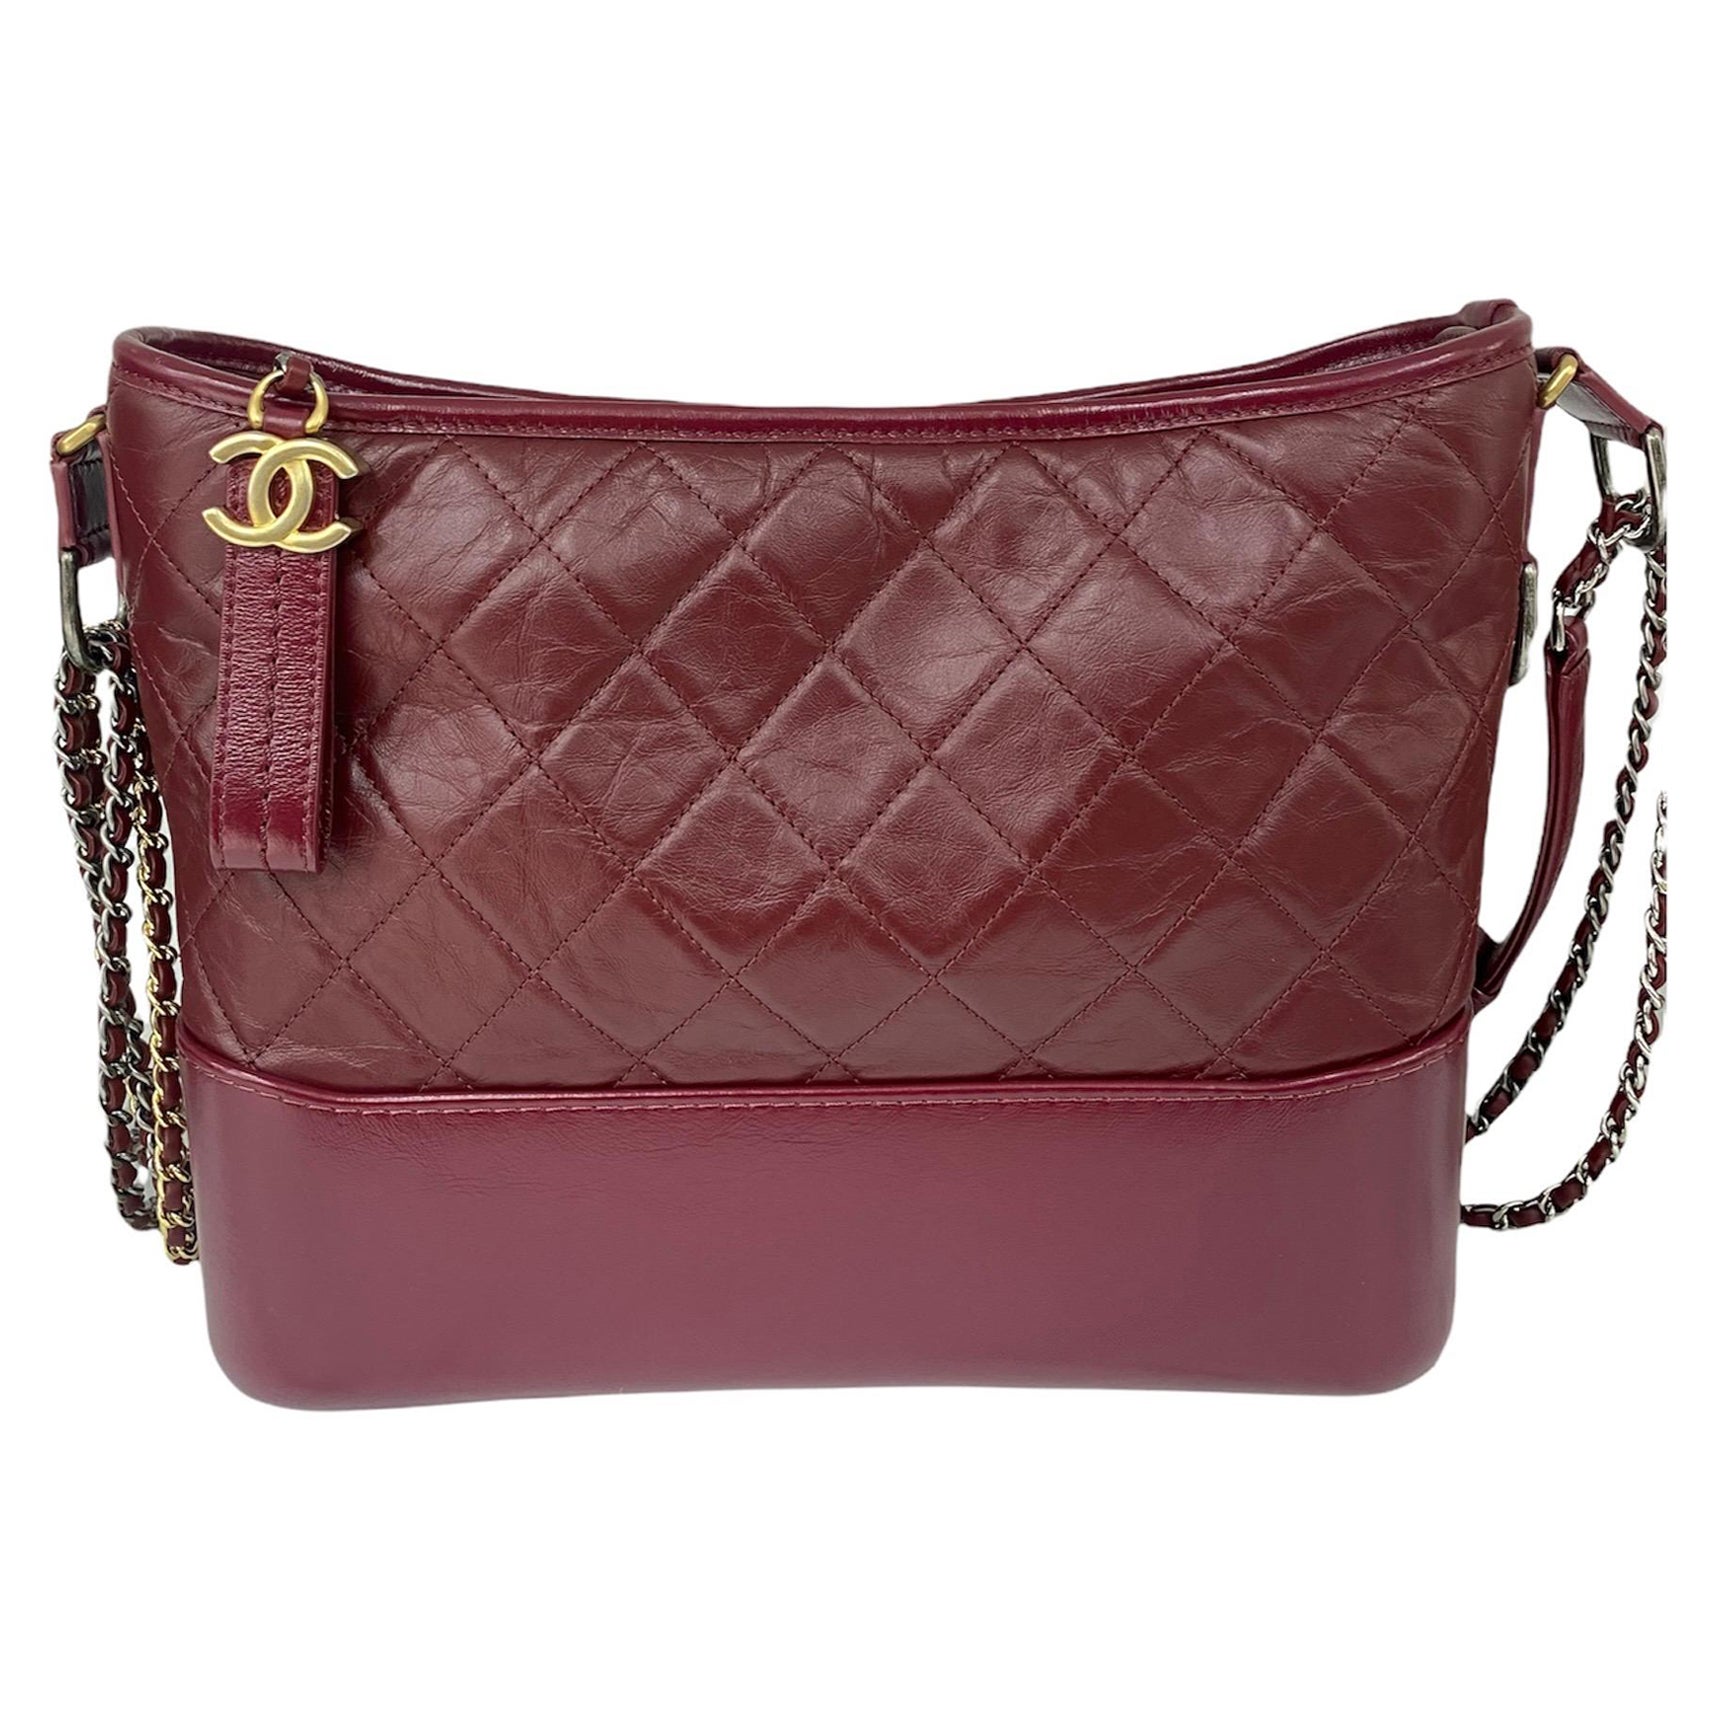 Chanel Bordeaux Leather Gabrielle Bag For Sale